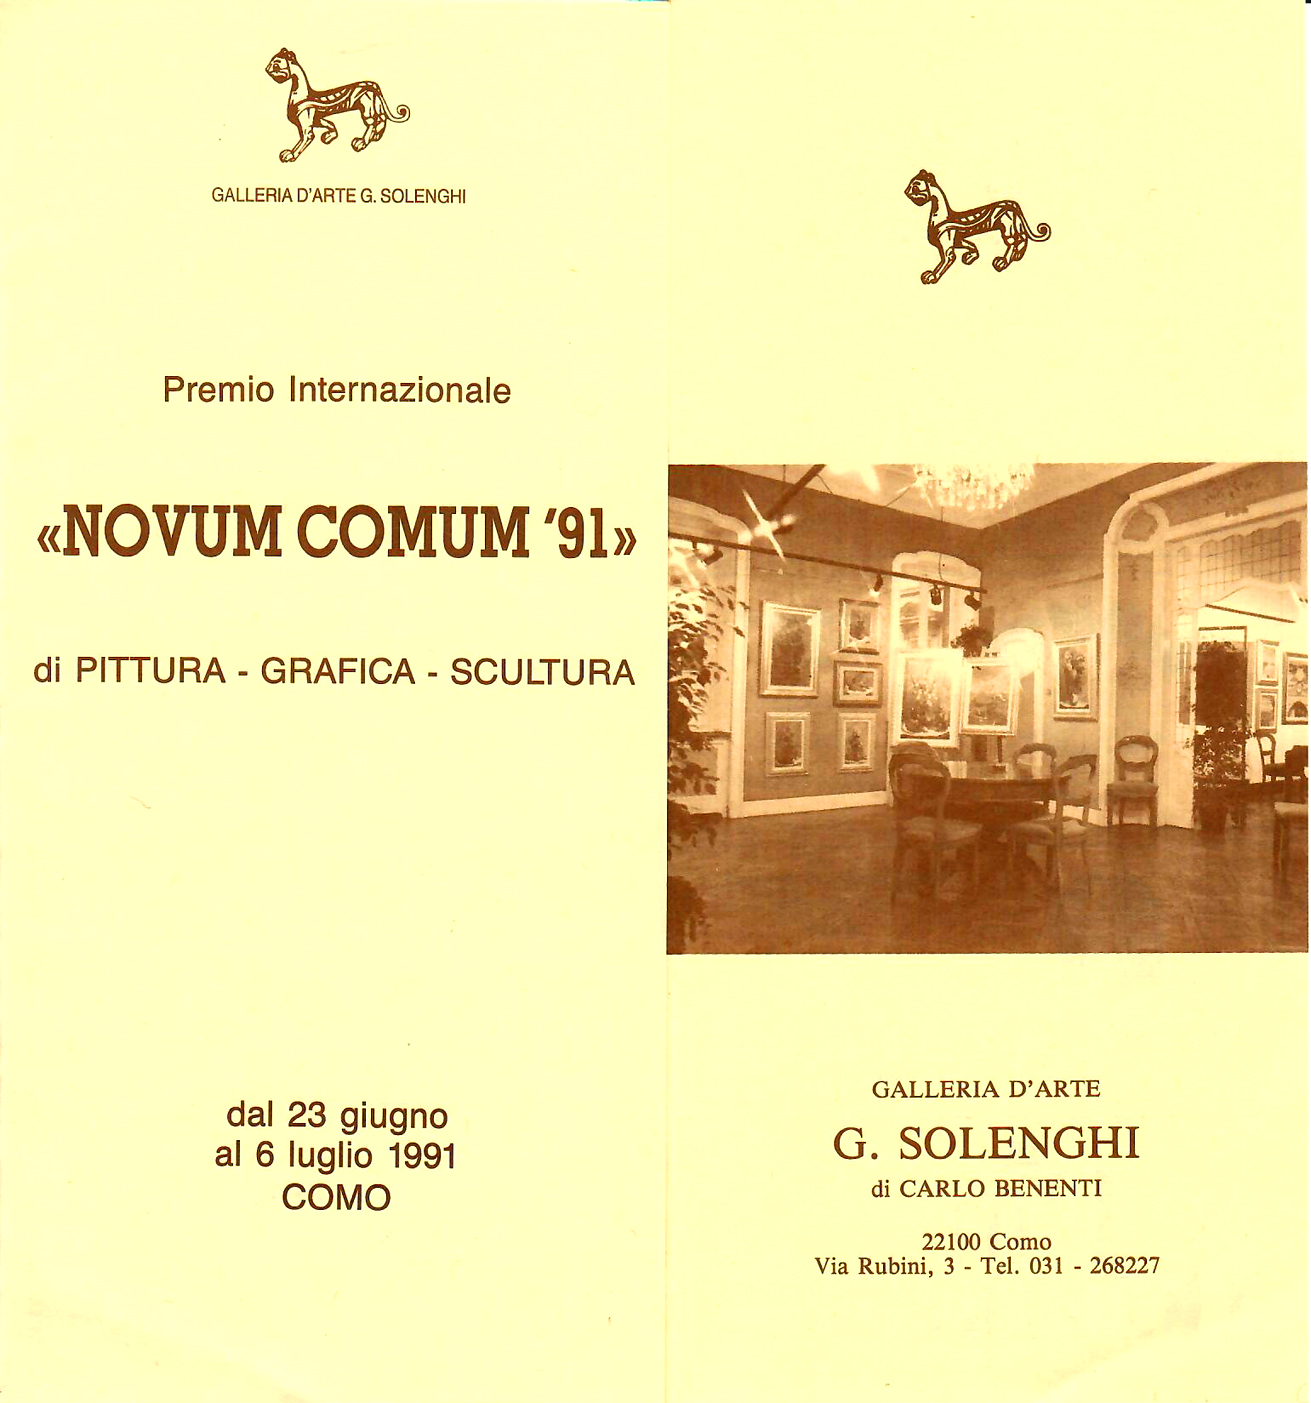 1991 - 1° Premio, Pittura, Figurativo Moderno, Galleria 'G. Solenghi', Como.